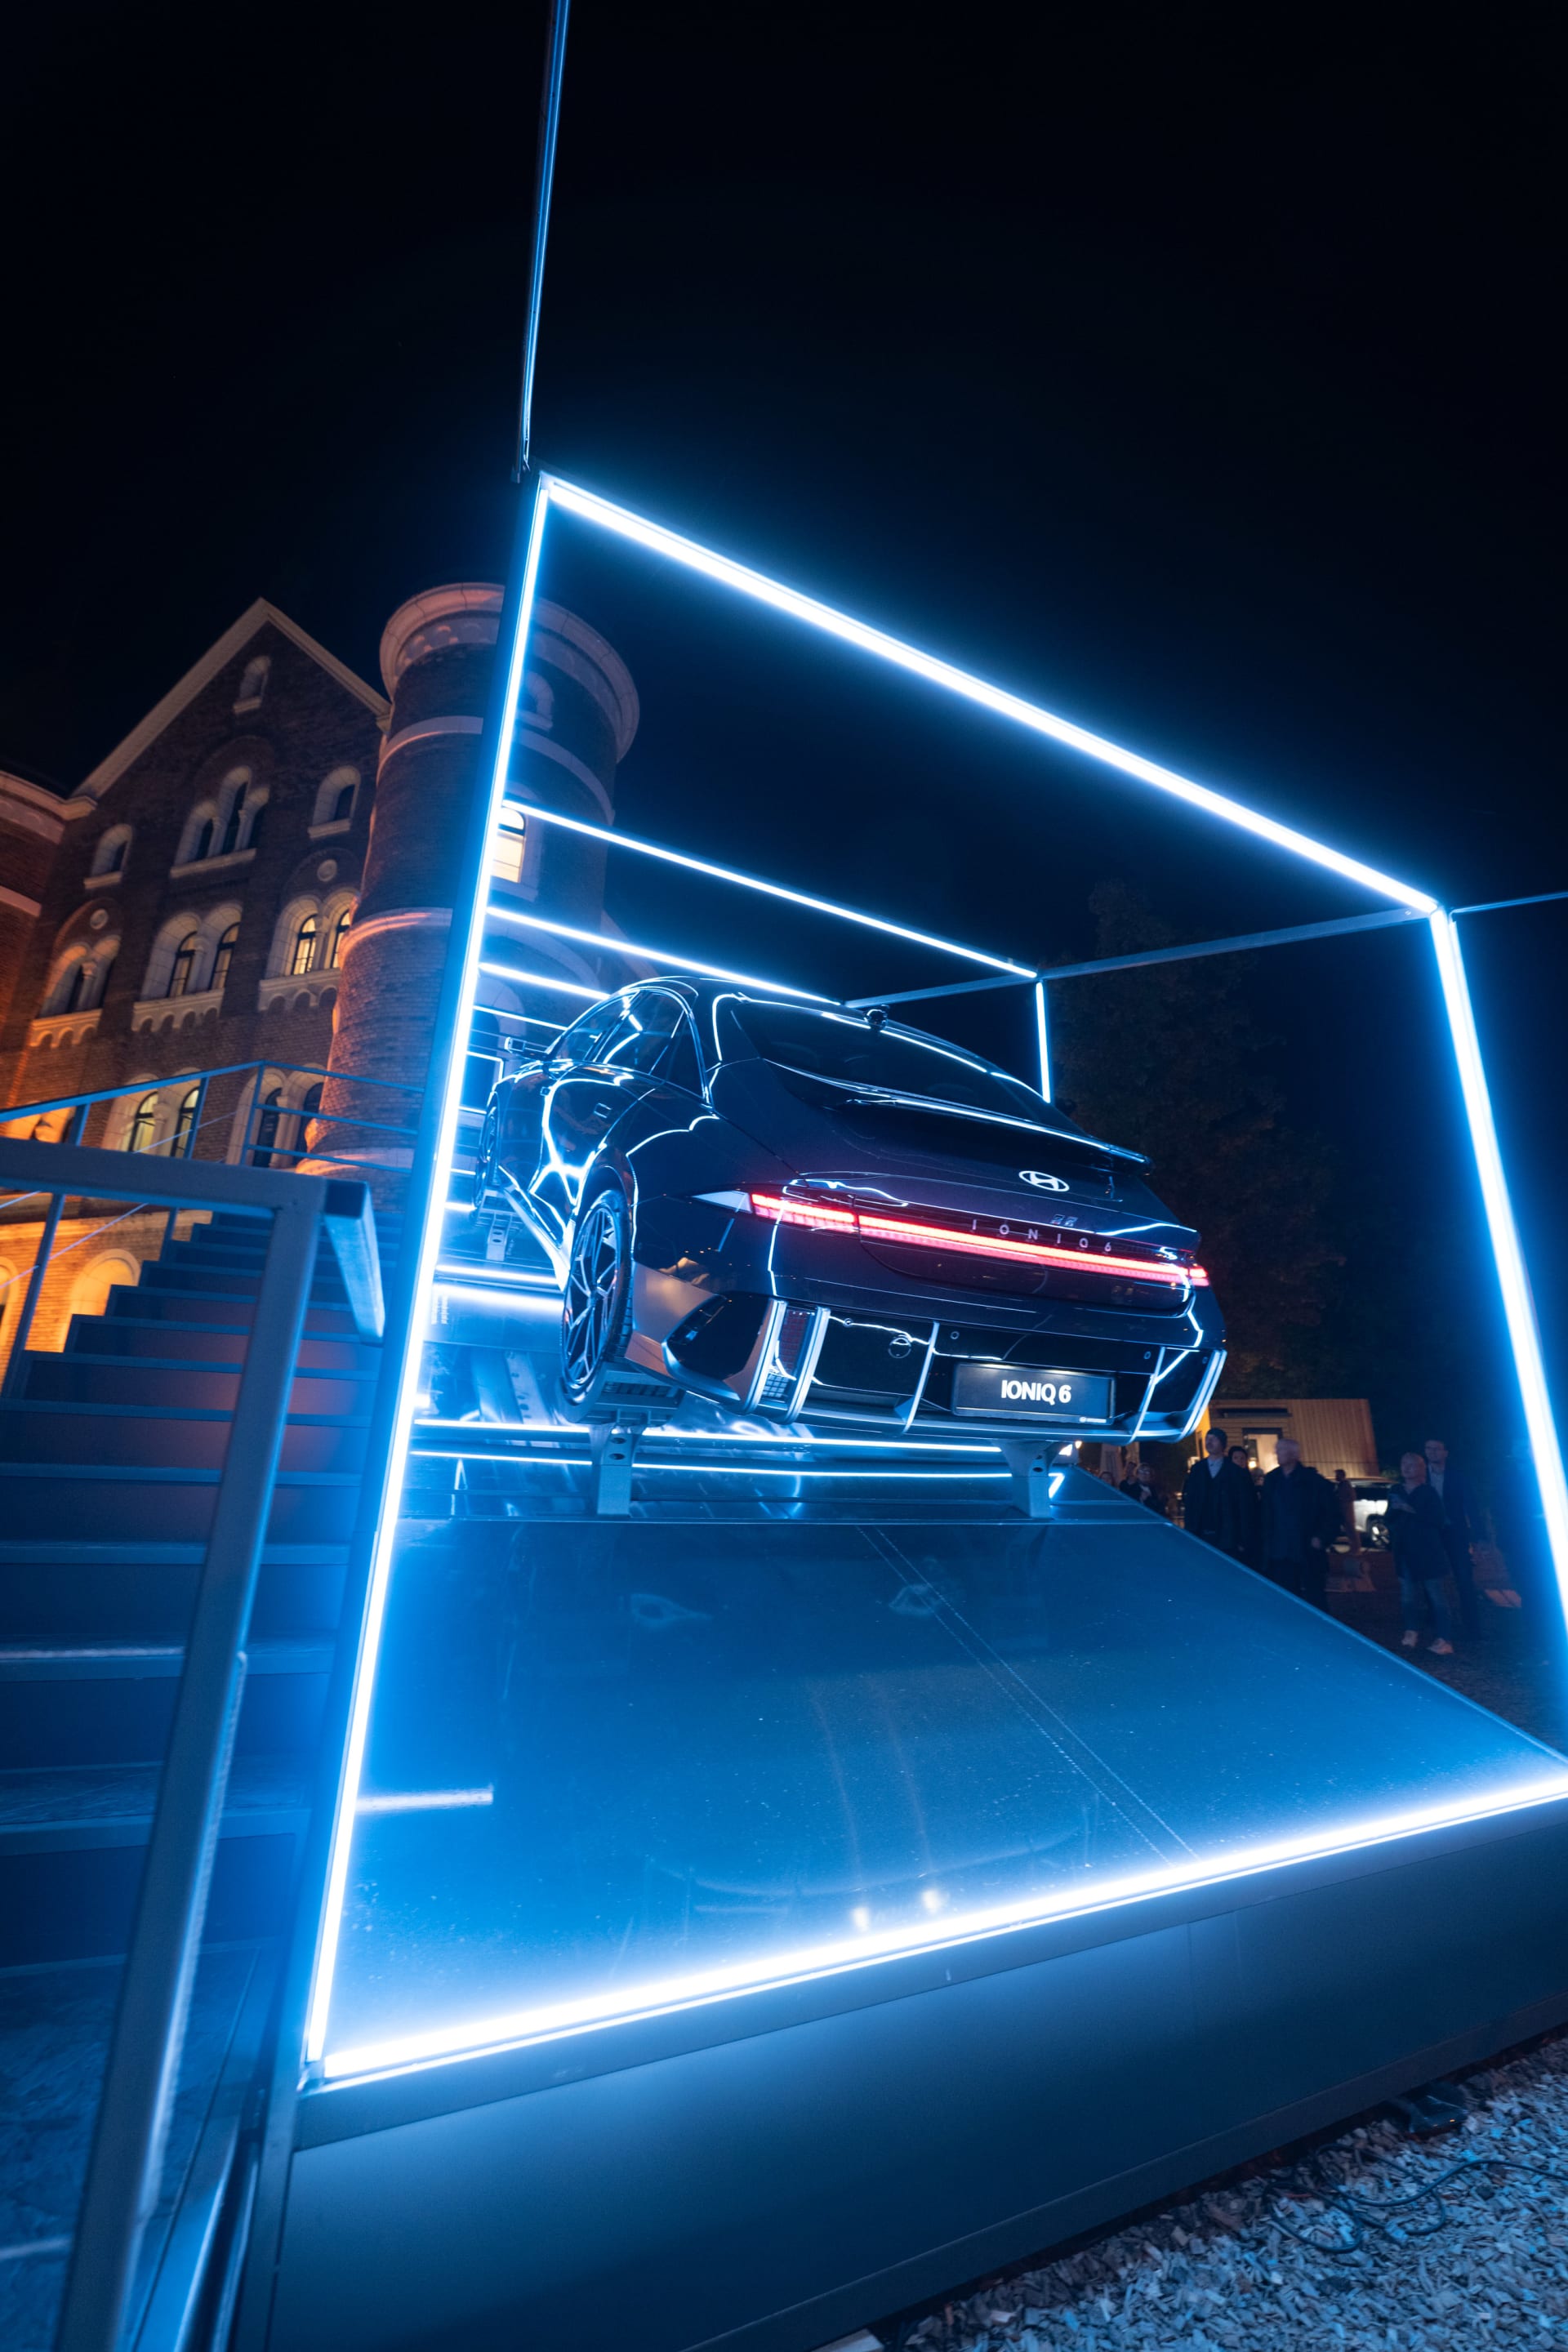 Proudnicová karoserie Ioniqu 6 se v noční světelné instalaci na Designbloku kouzelně vyjímala.